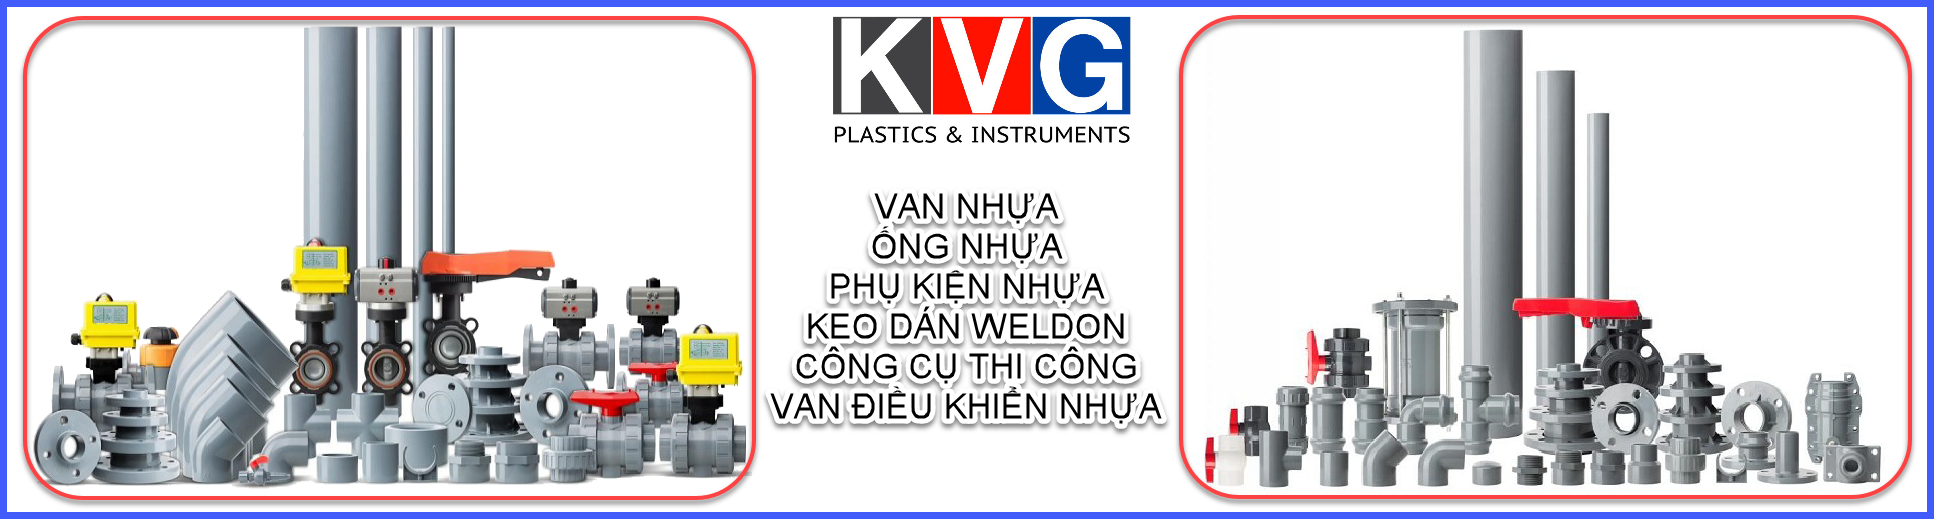 Banner_ong_nhua_PVC_CPVC_KVG